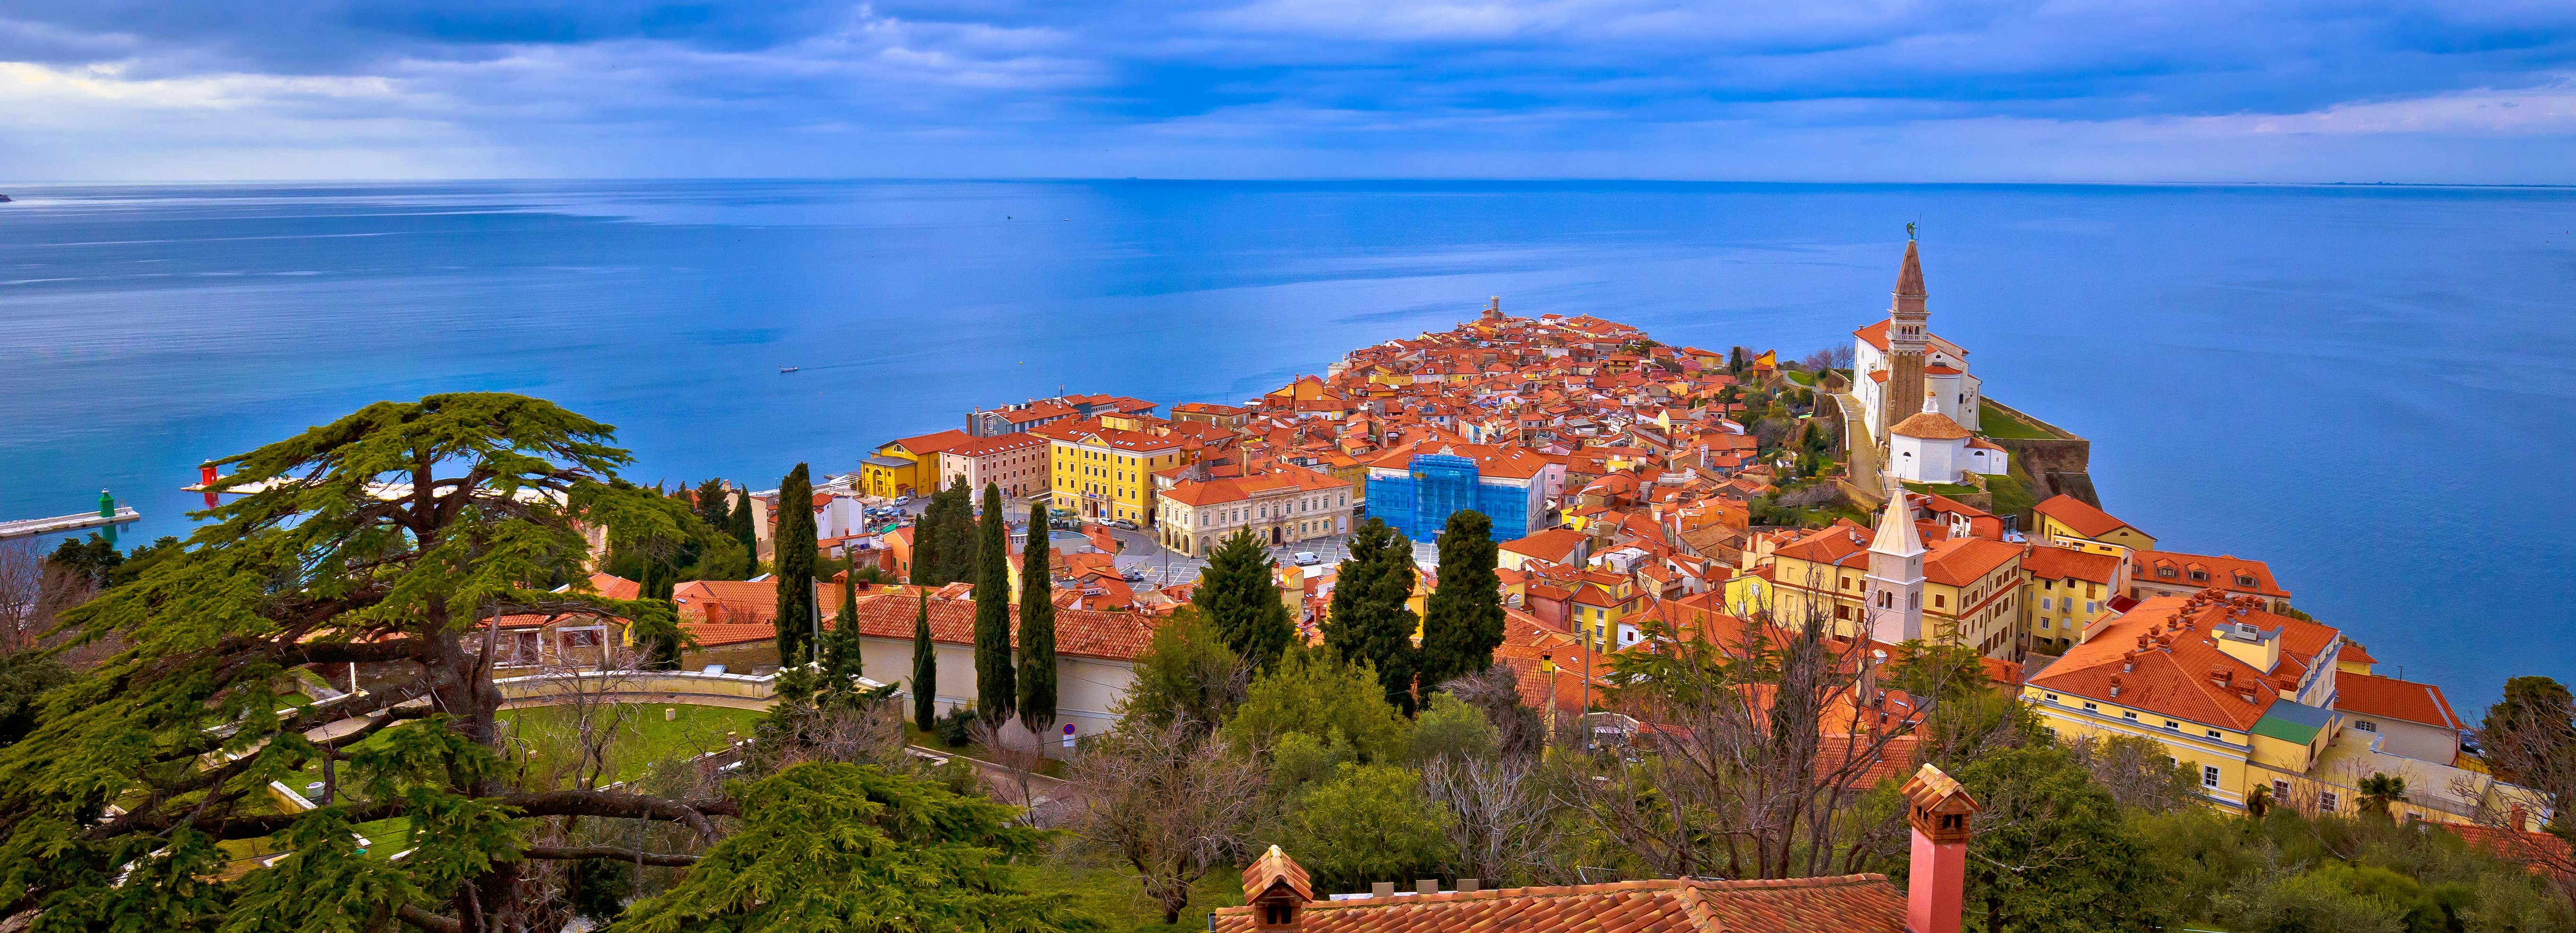 Tour guiado de Piran y la costa eslovena desde Trieste